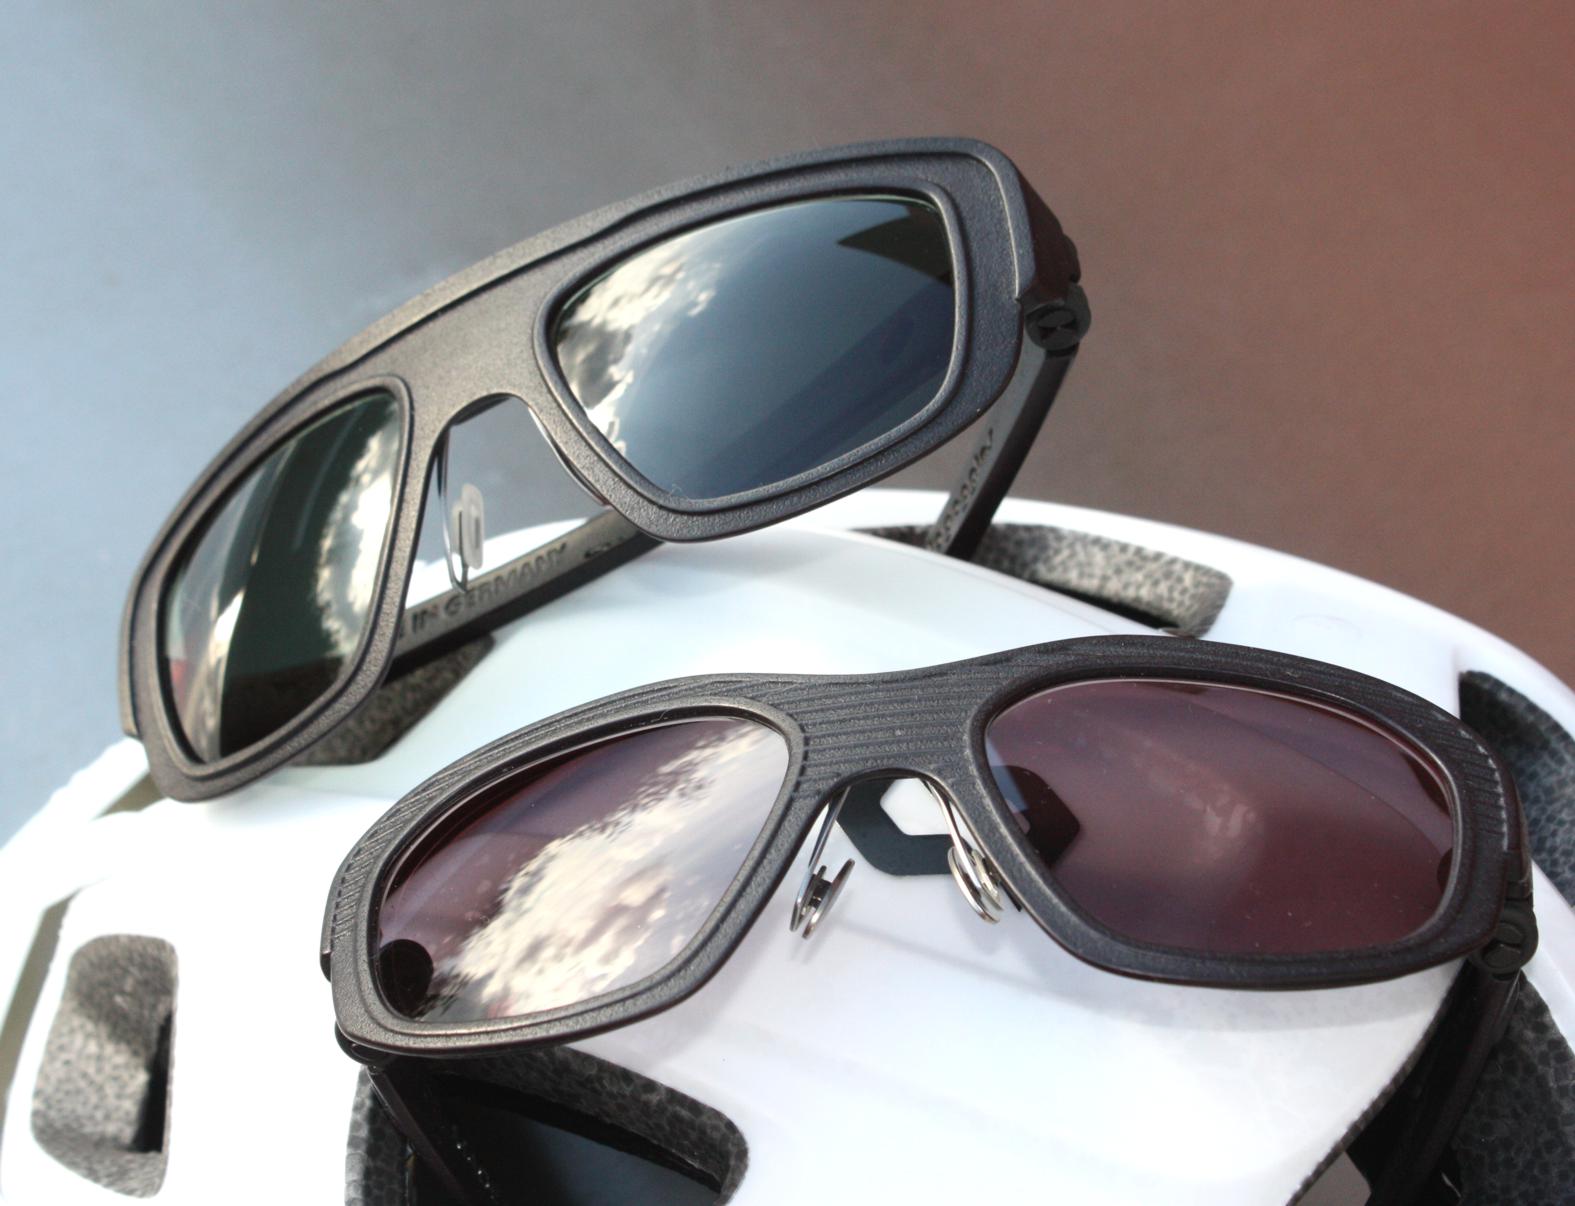 velogoggles - Sportbrillen für Fahrrad, Motorrad und Skilauf